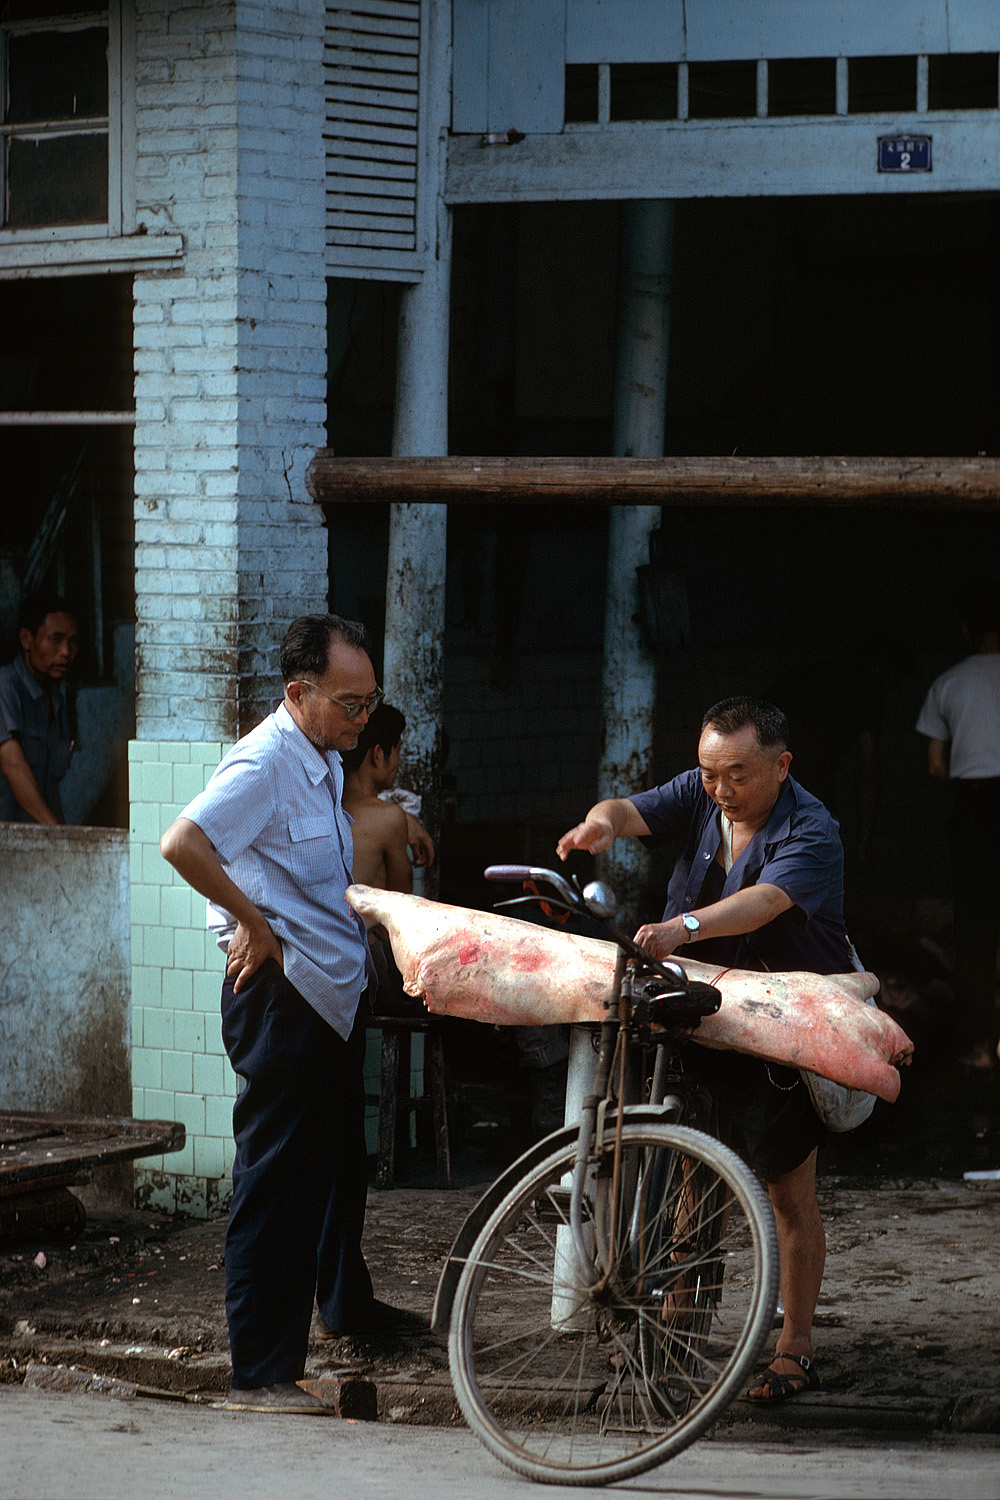 bill-hocker-meat-chengdu-china-1981